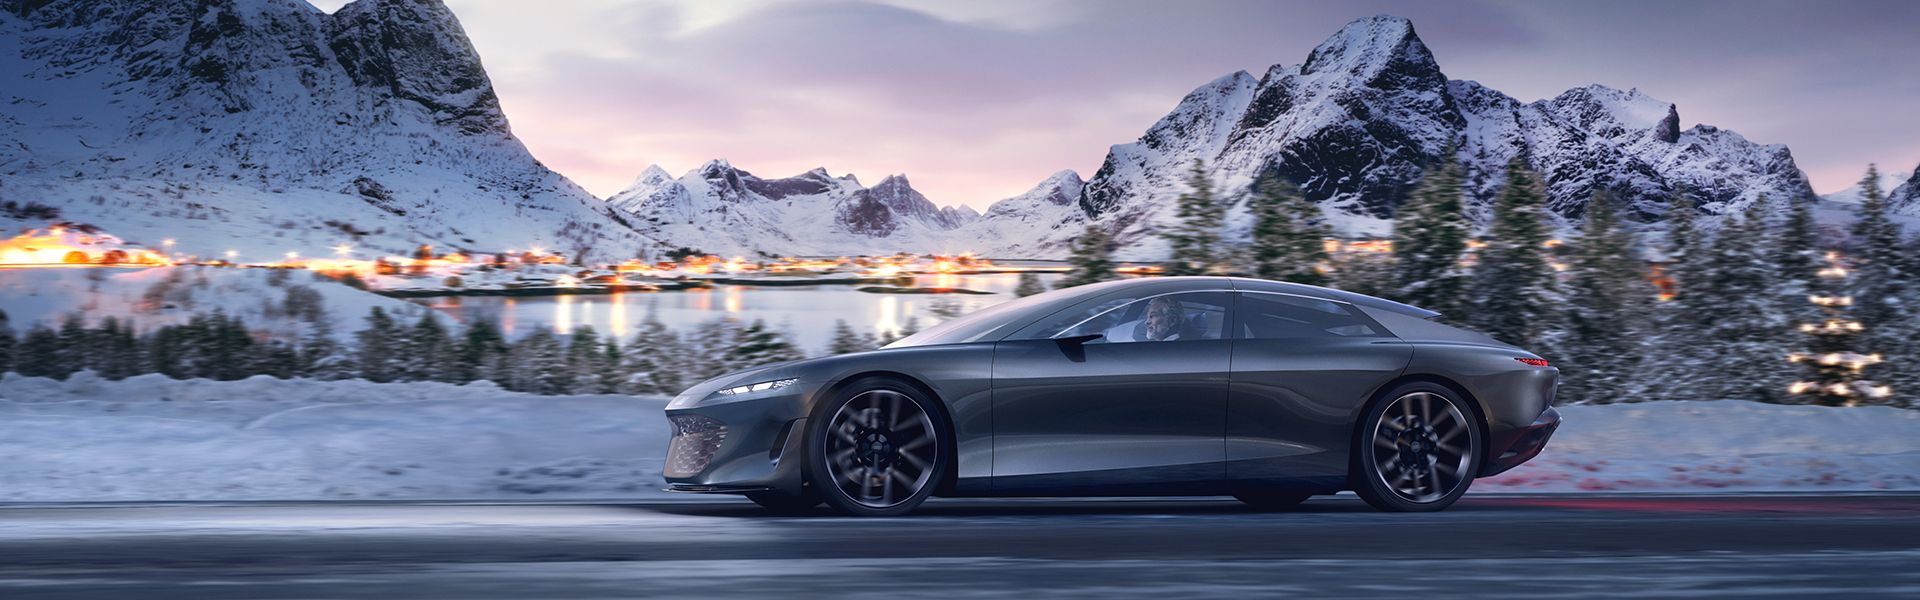 Audi grandsphere concept in viaggio sulla strada davanti ad un paesaggio innevato con montagne.